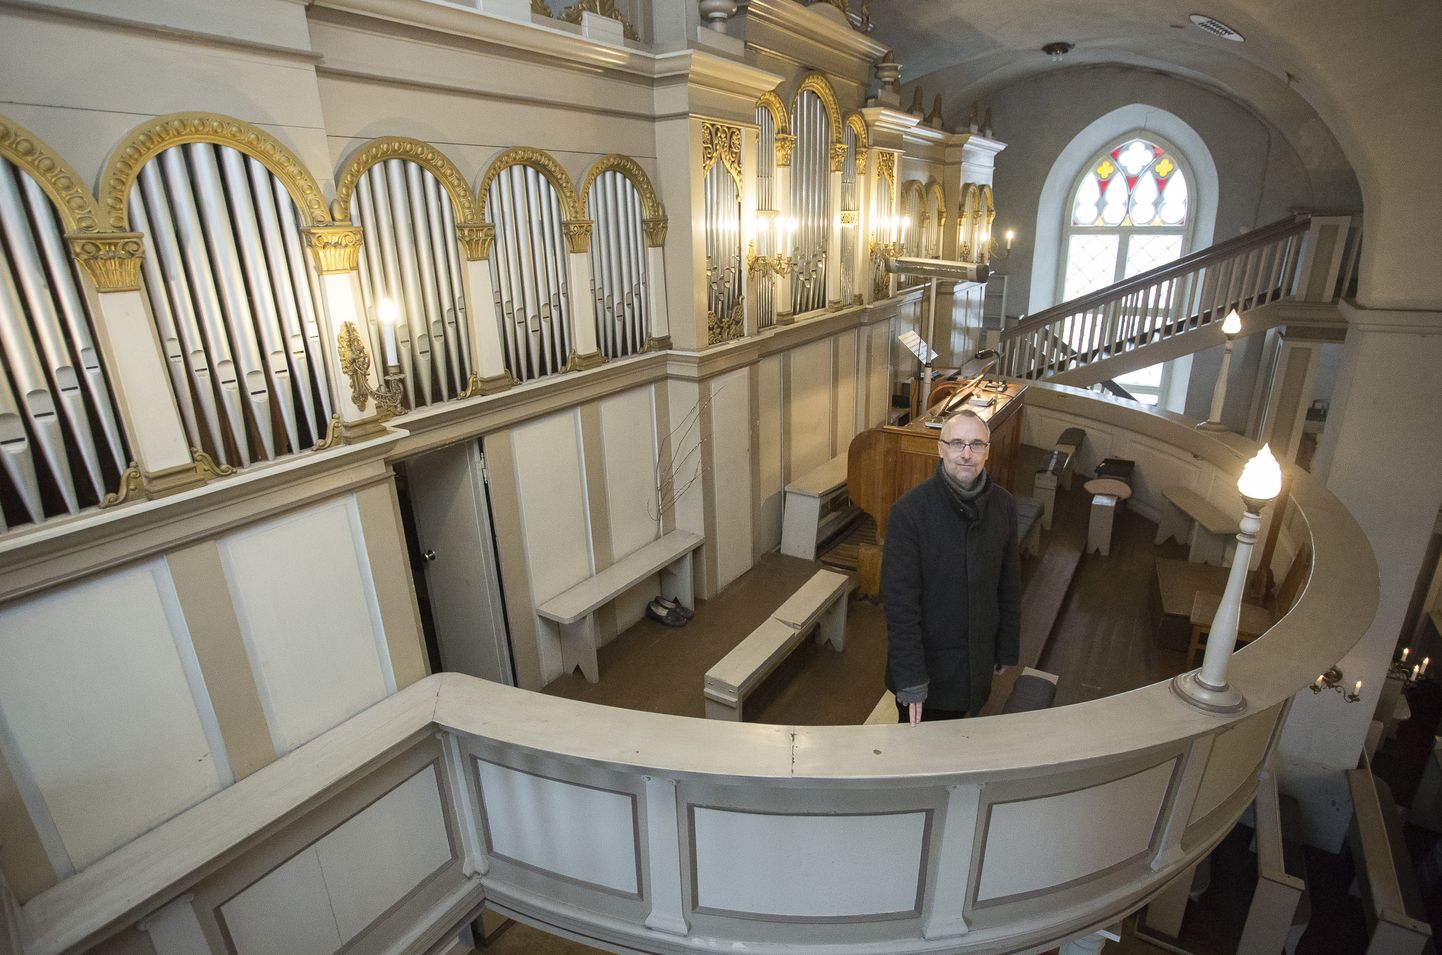 Helilooja Mart Siimer on organistina kirikutes mänginud 30 aastat. Pärast väikest pausi tundis ta soovi taas liturgiaid mängida – viimased aas tad on ta igal pühapäeval pannud kõlama Rakvere Kolmainu oreli.